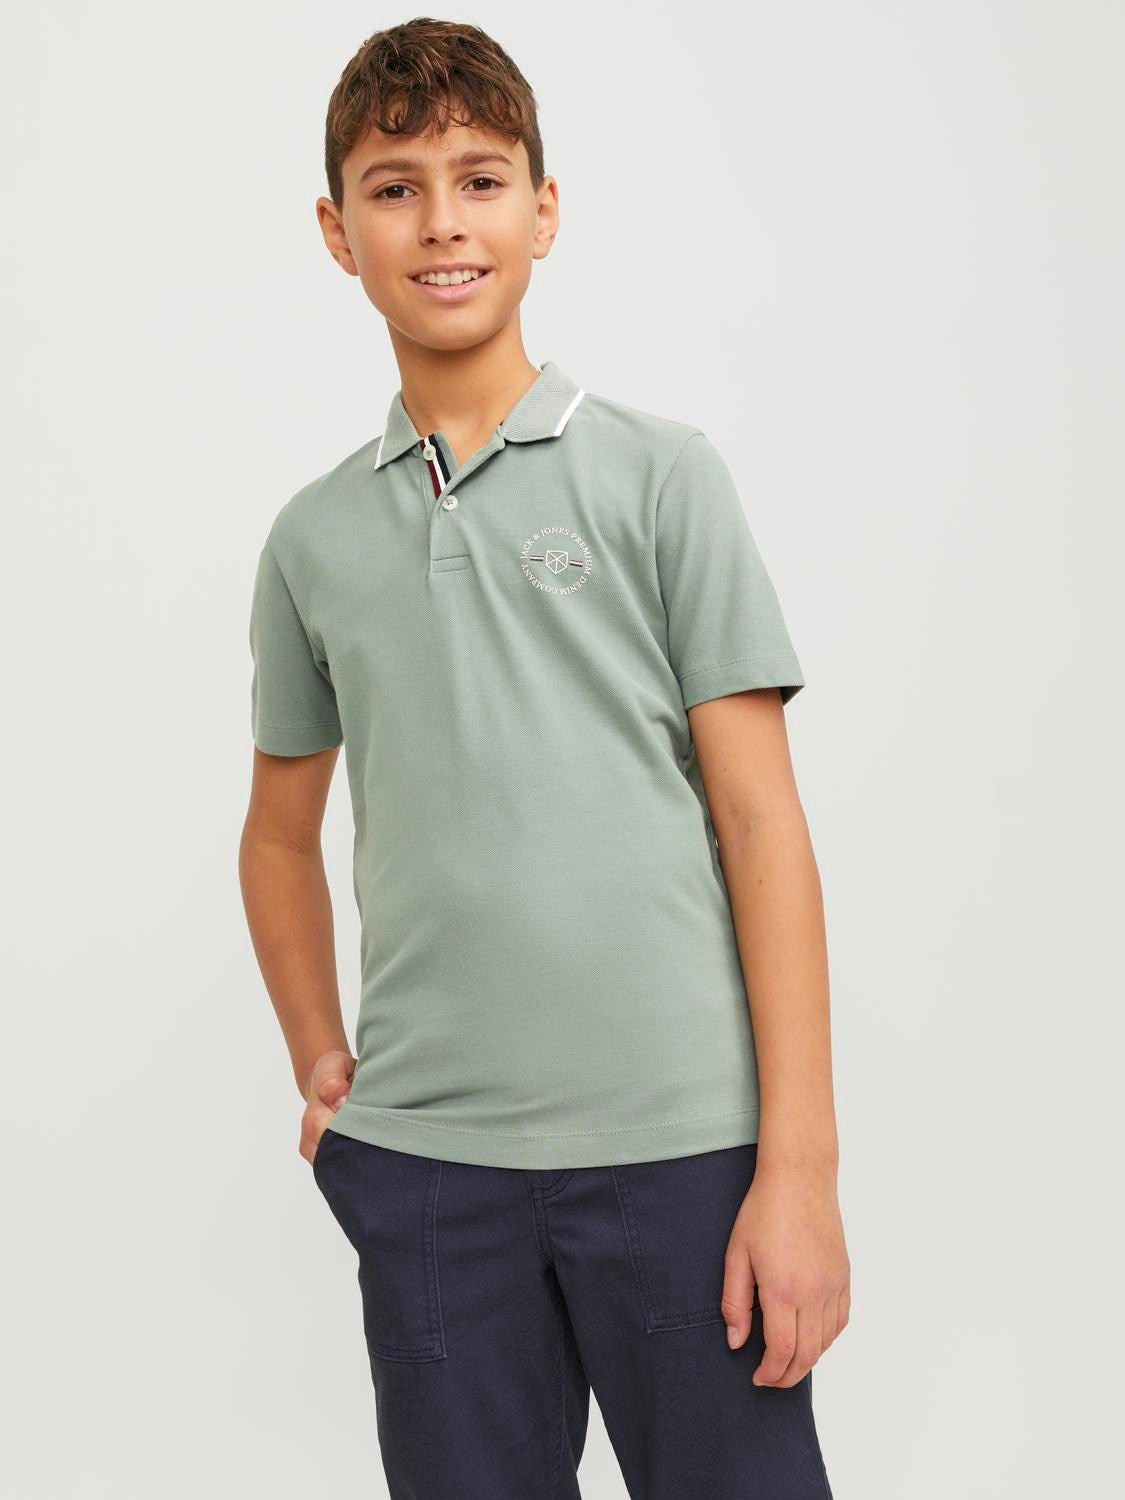 Shield Junior Boy Lily Pad Polo Shirt